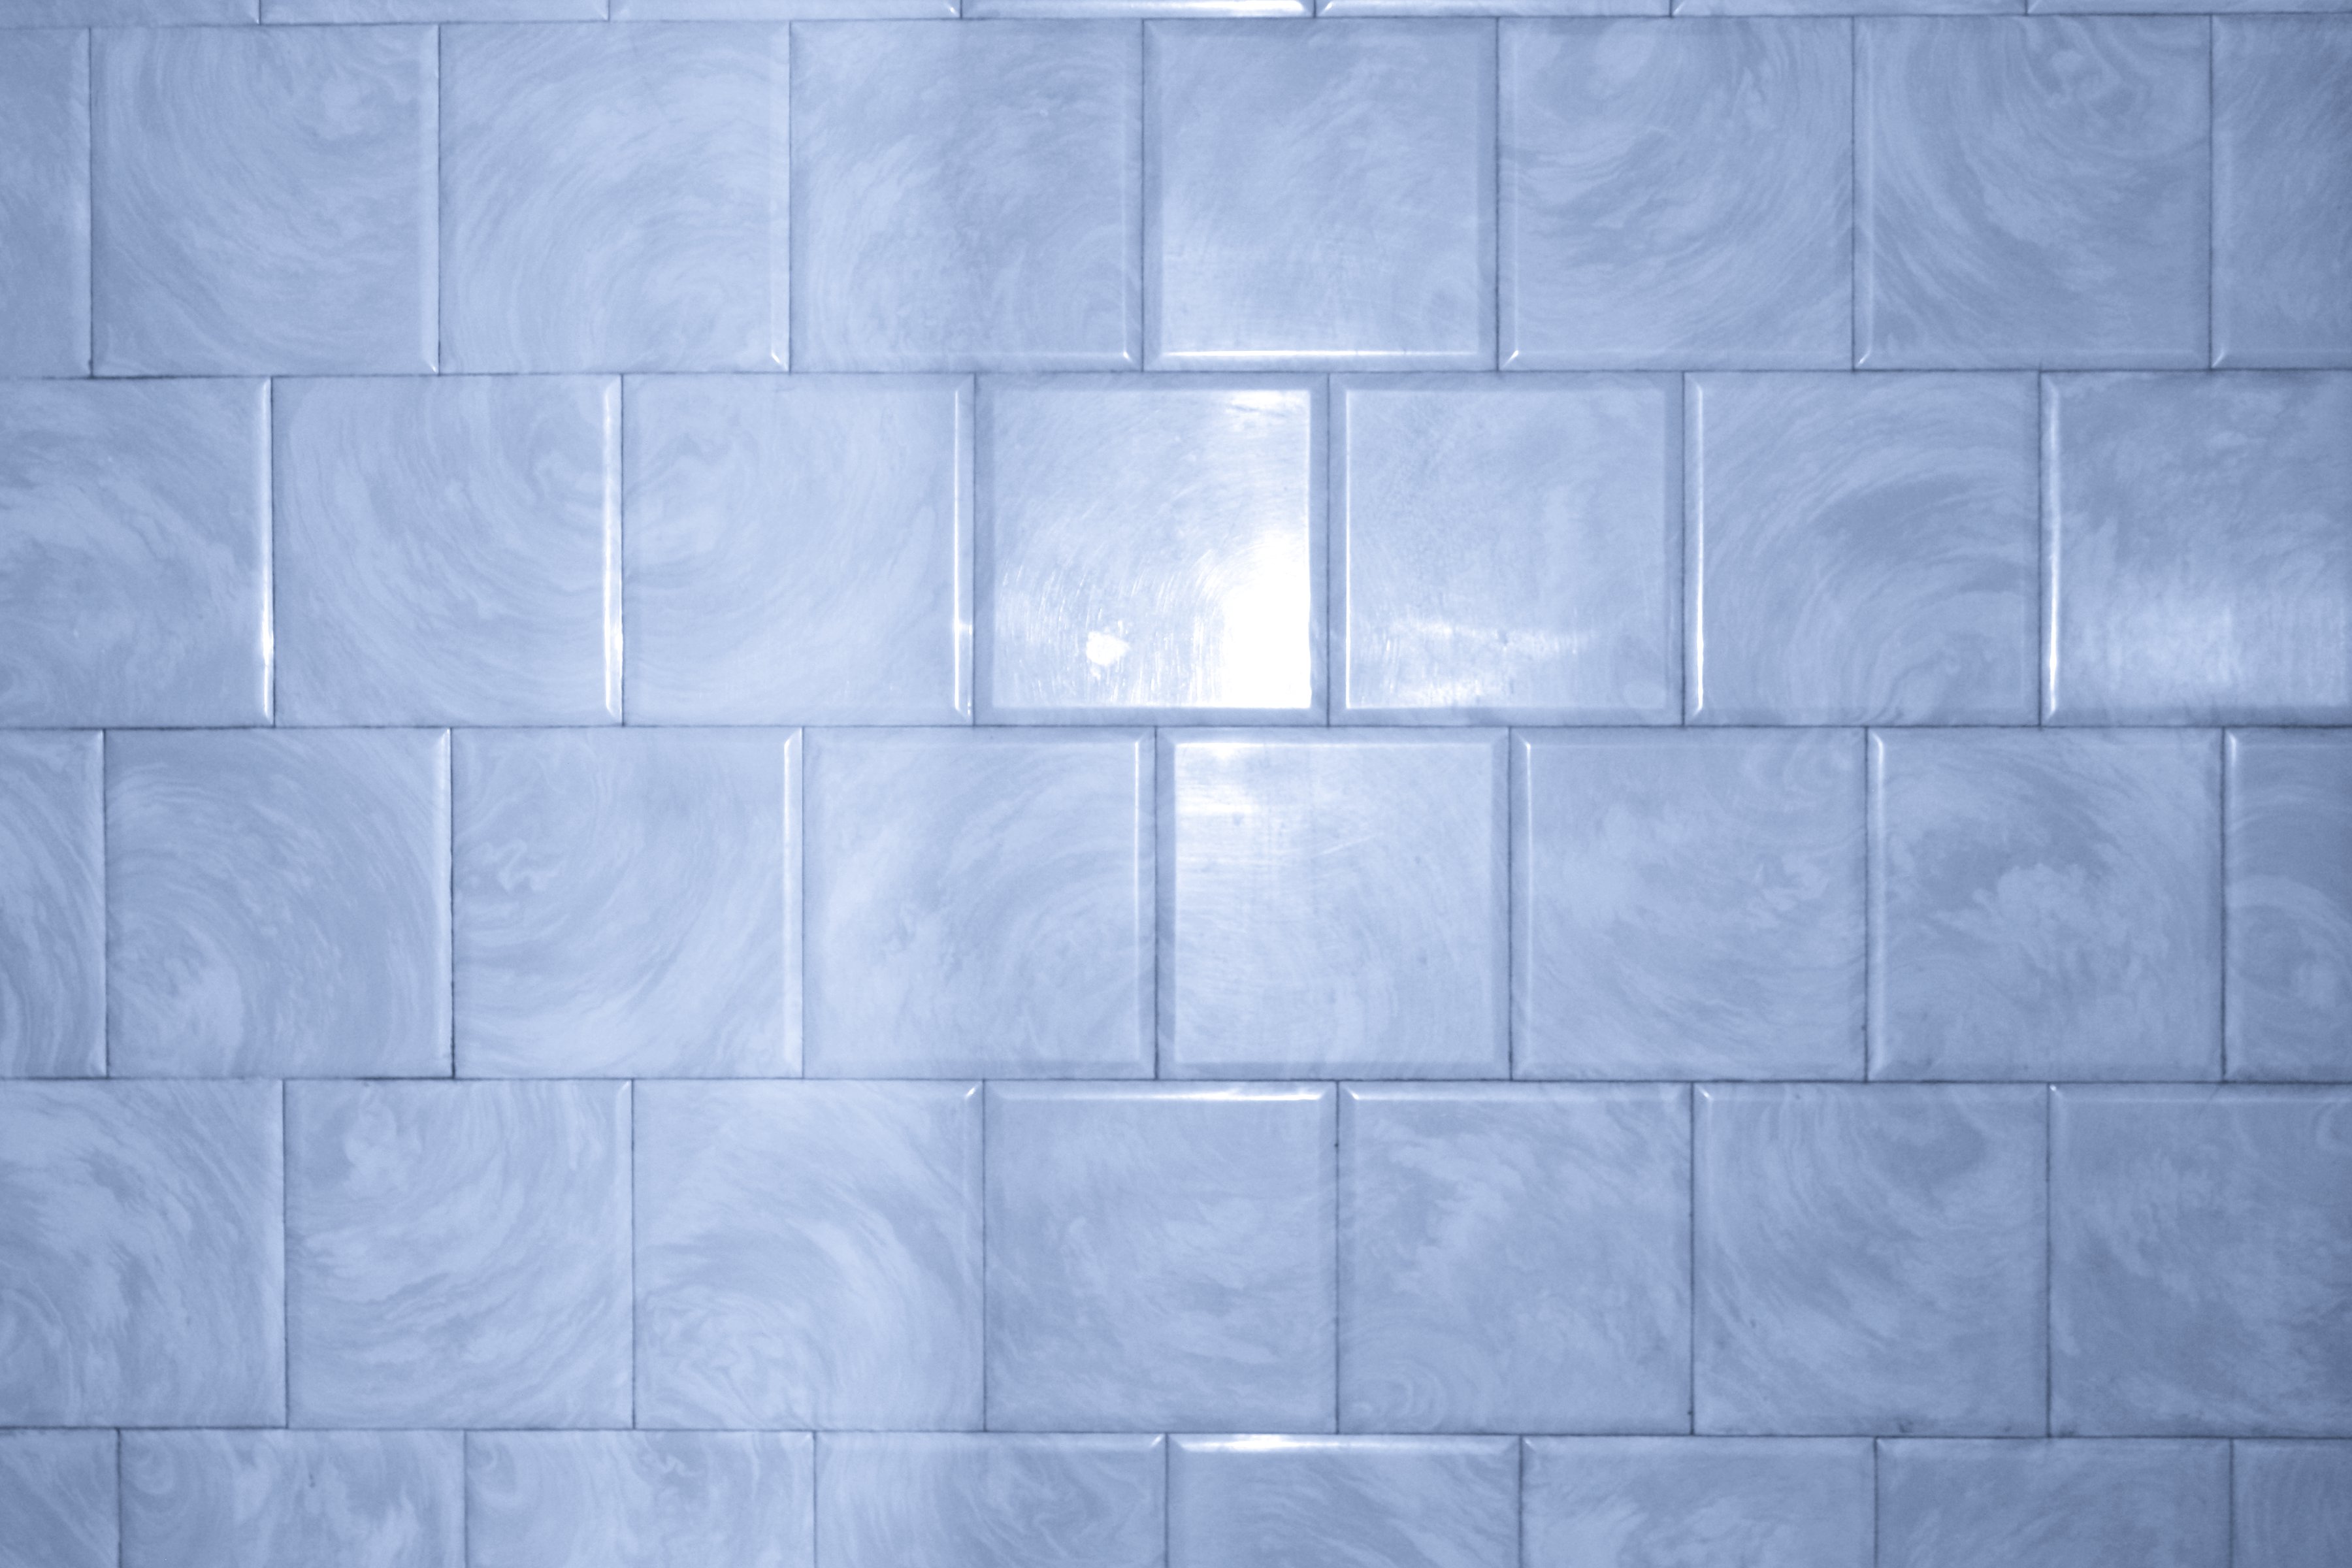 blue floor tiles texture